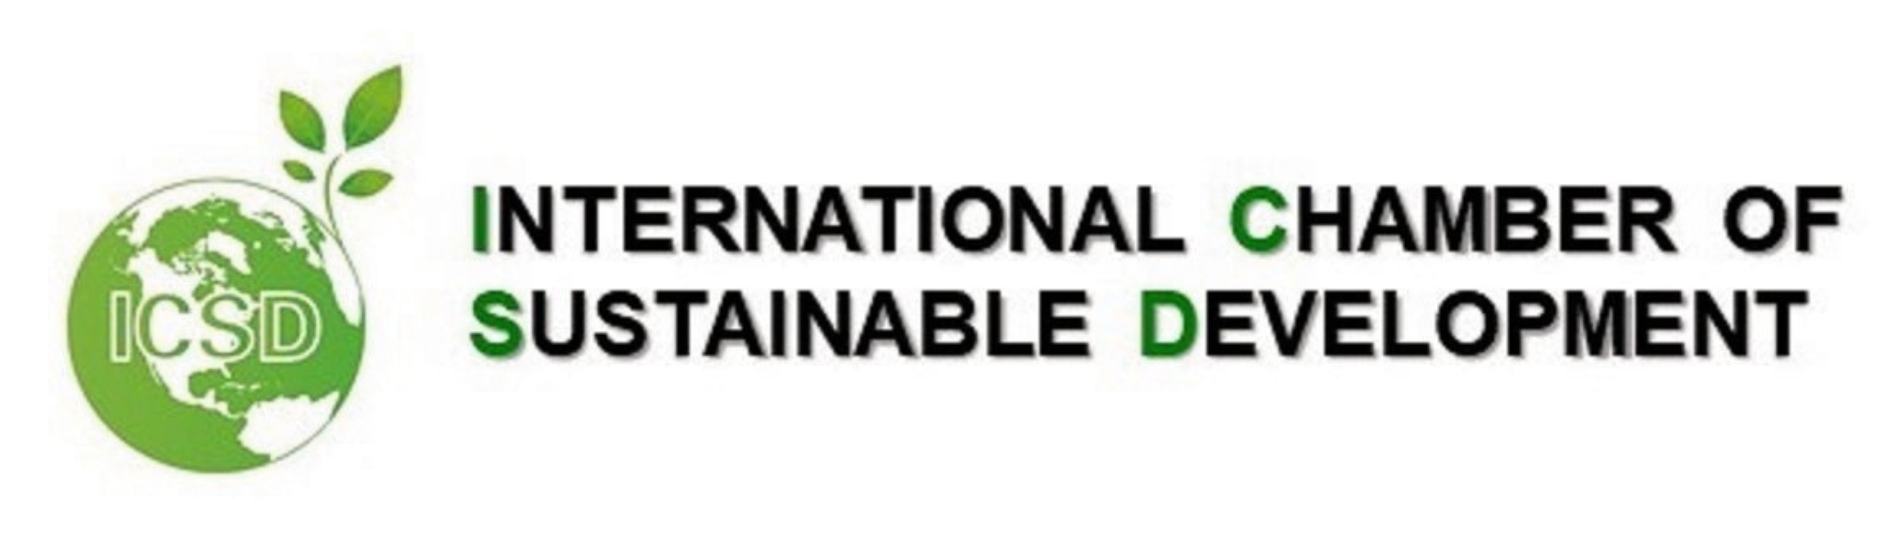 International Chamber of Sustainable Development